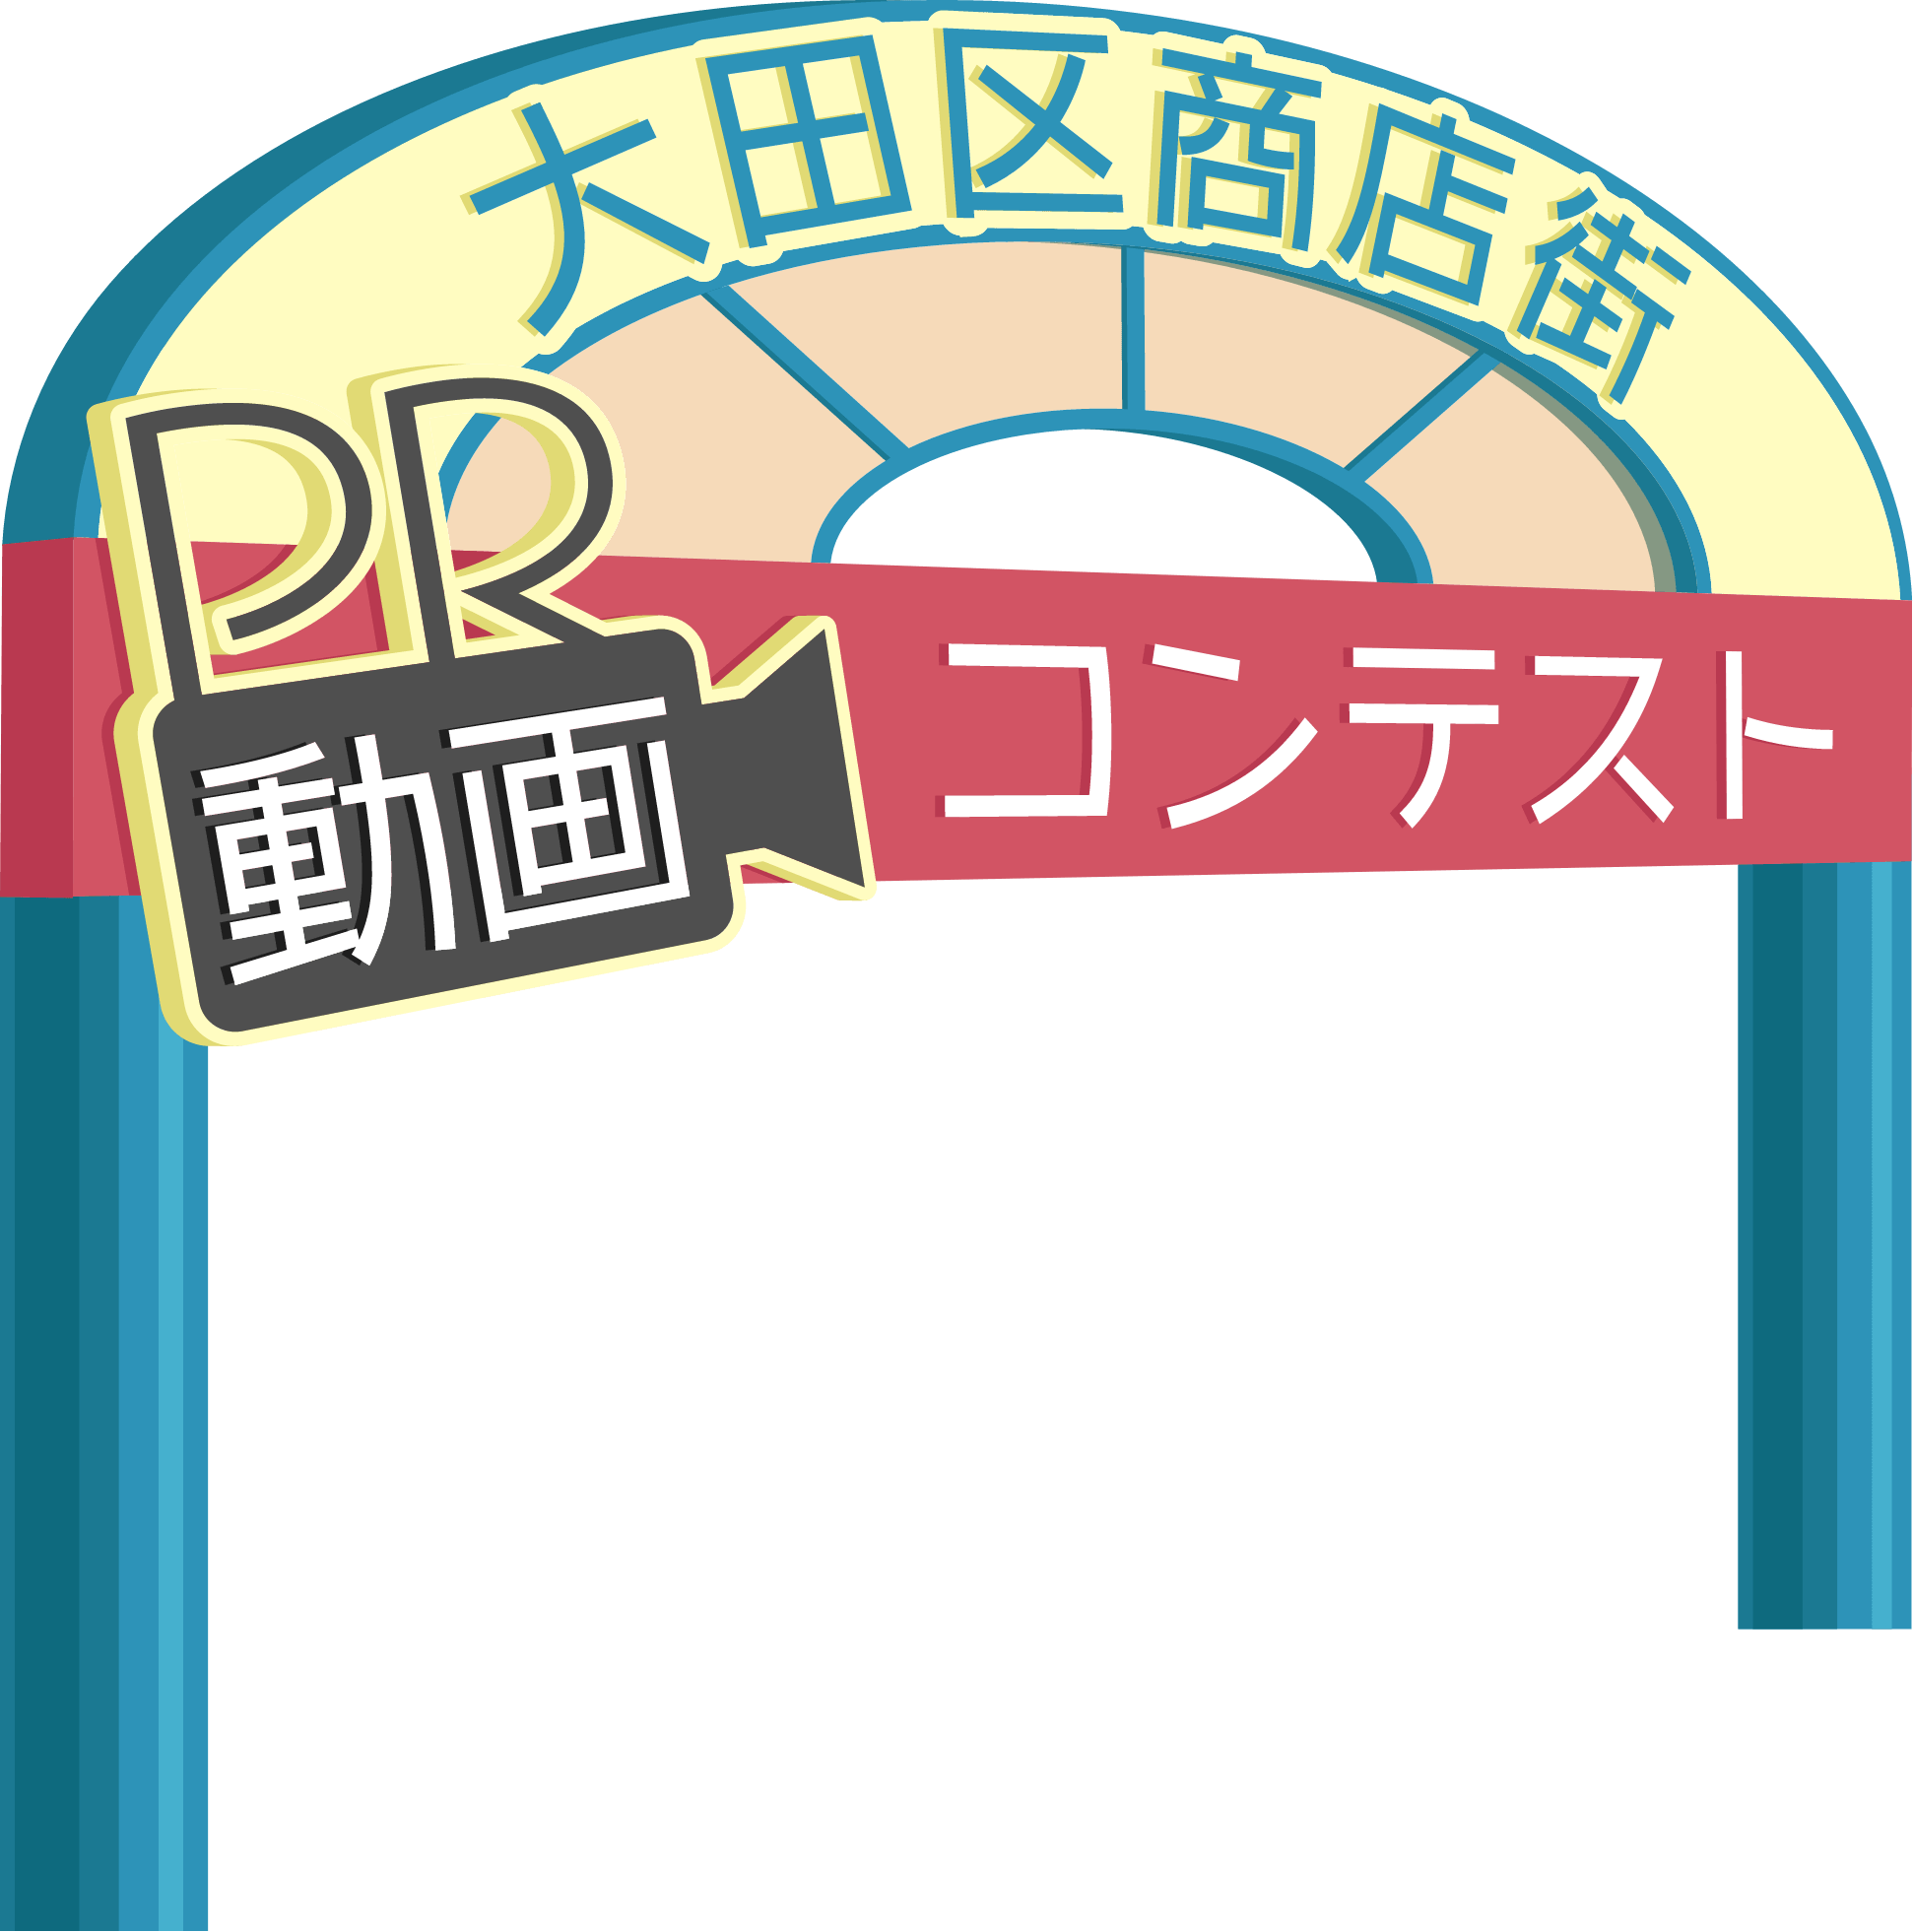 大田区商店街PR動画コンテスト